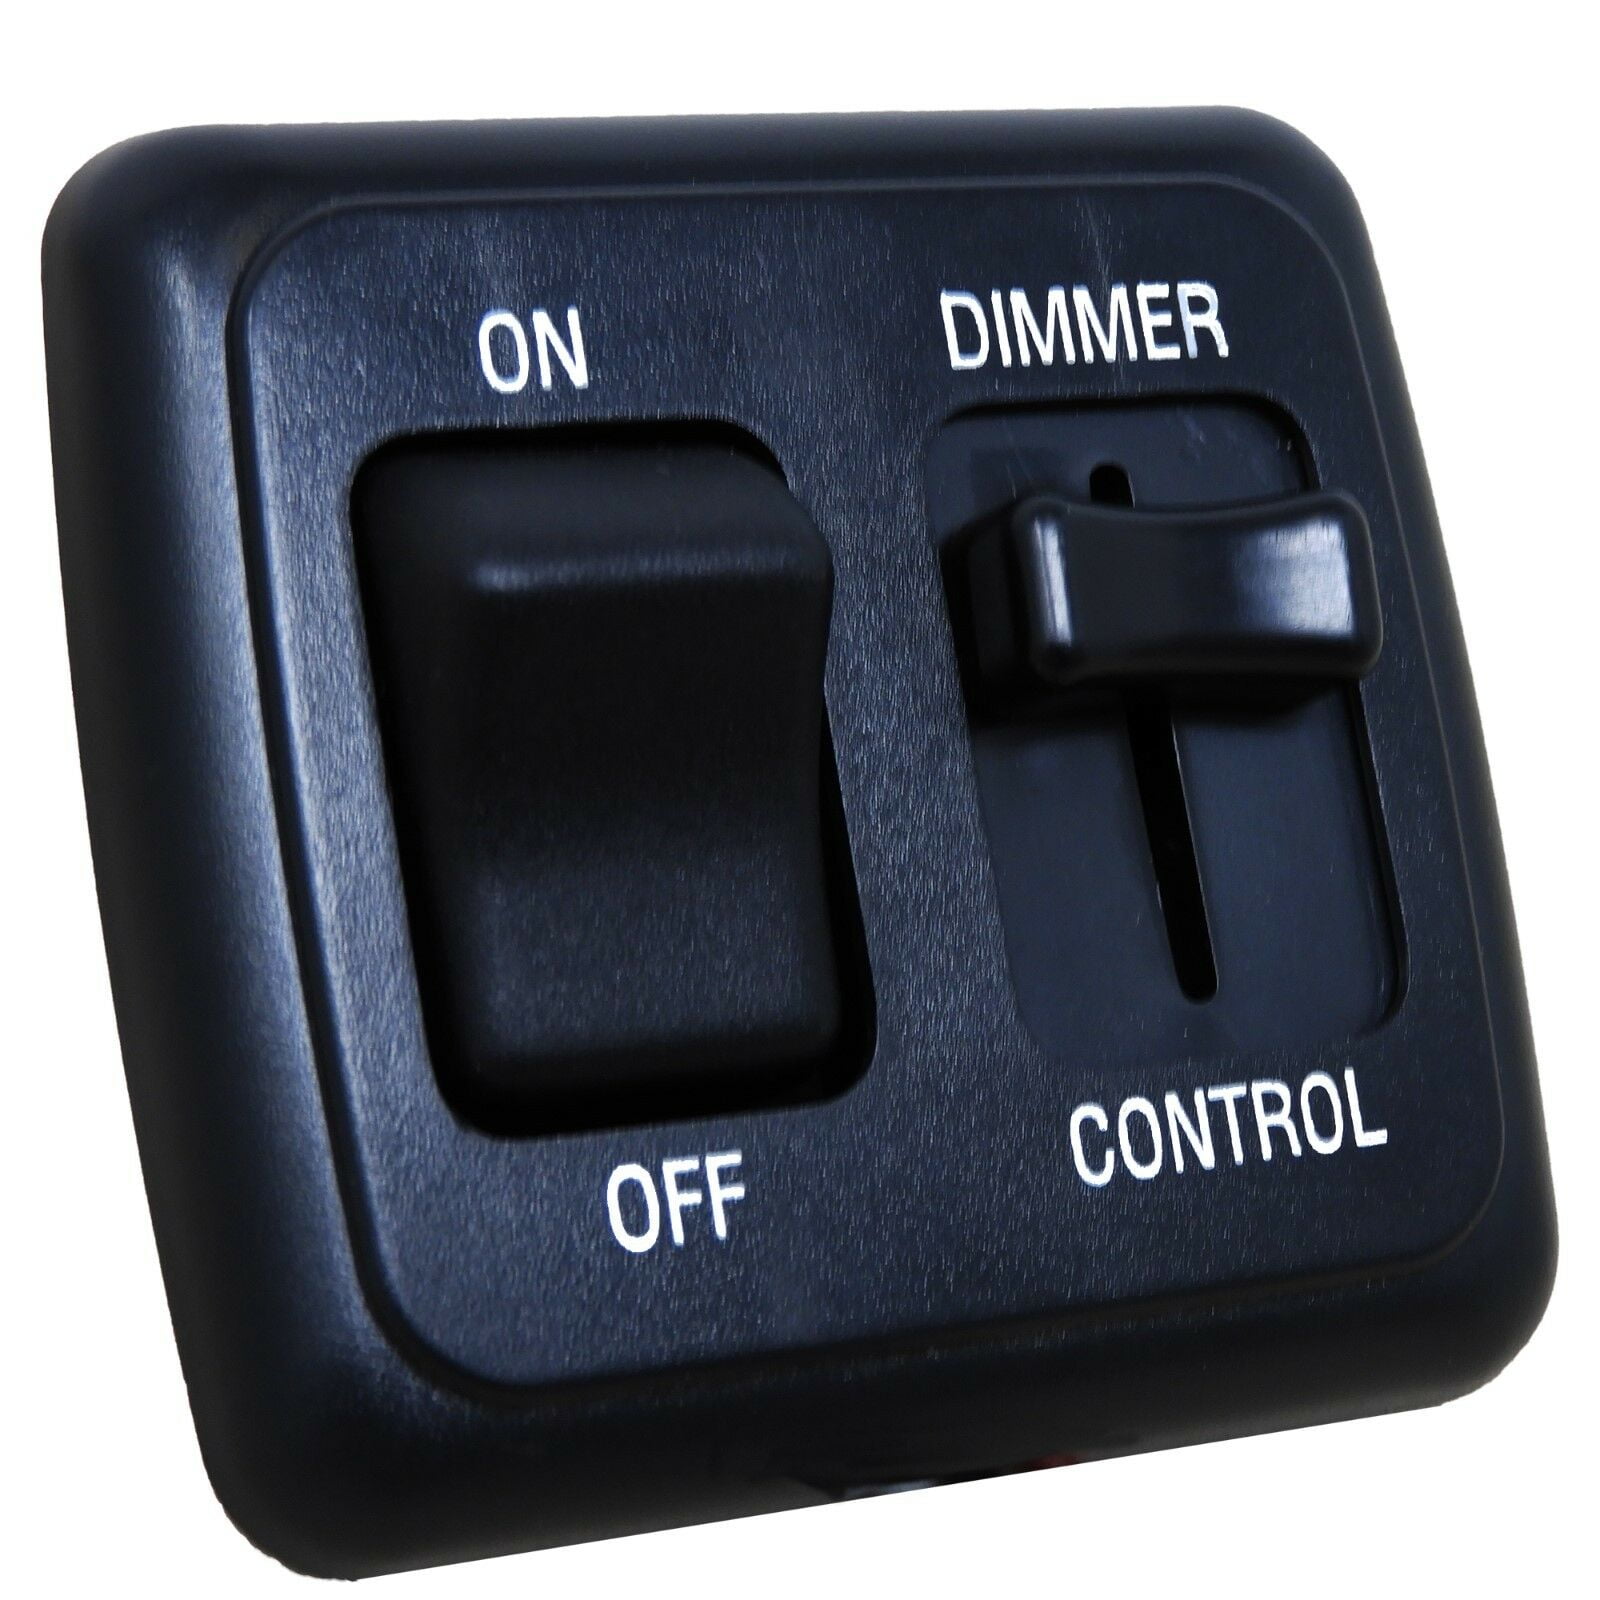 voor mij kanaal Eenvoud LED Dimmer Switch 12 volt on-off Light RV Motor Home Camper Travel Trailer  Black - Walmart.com